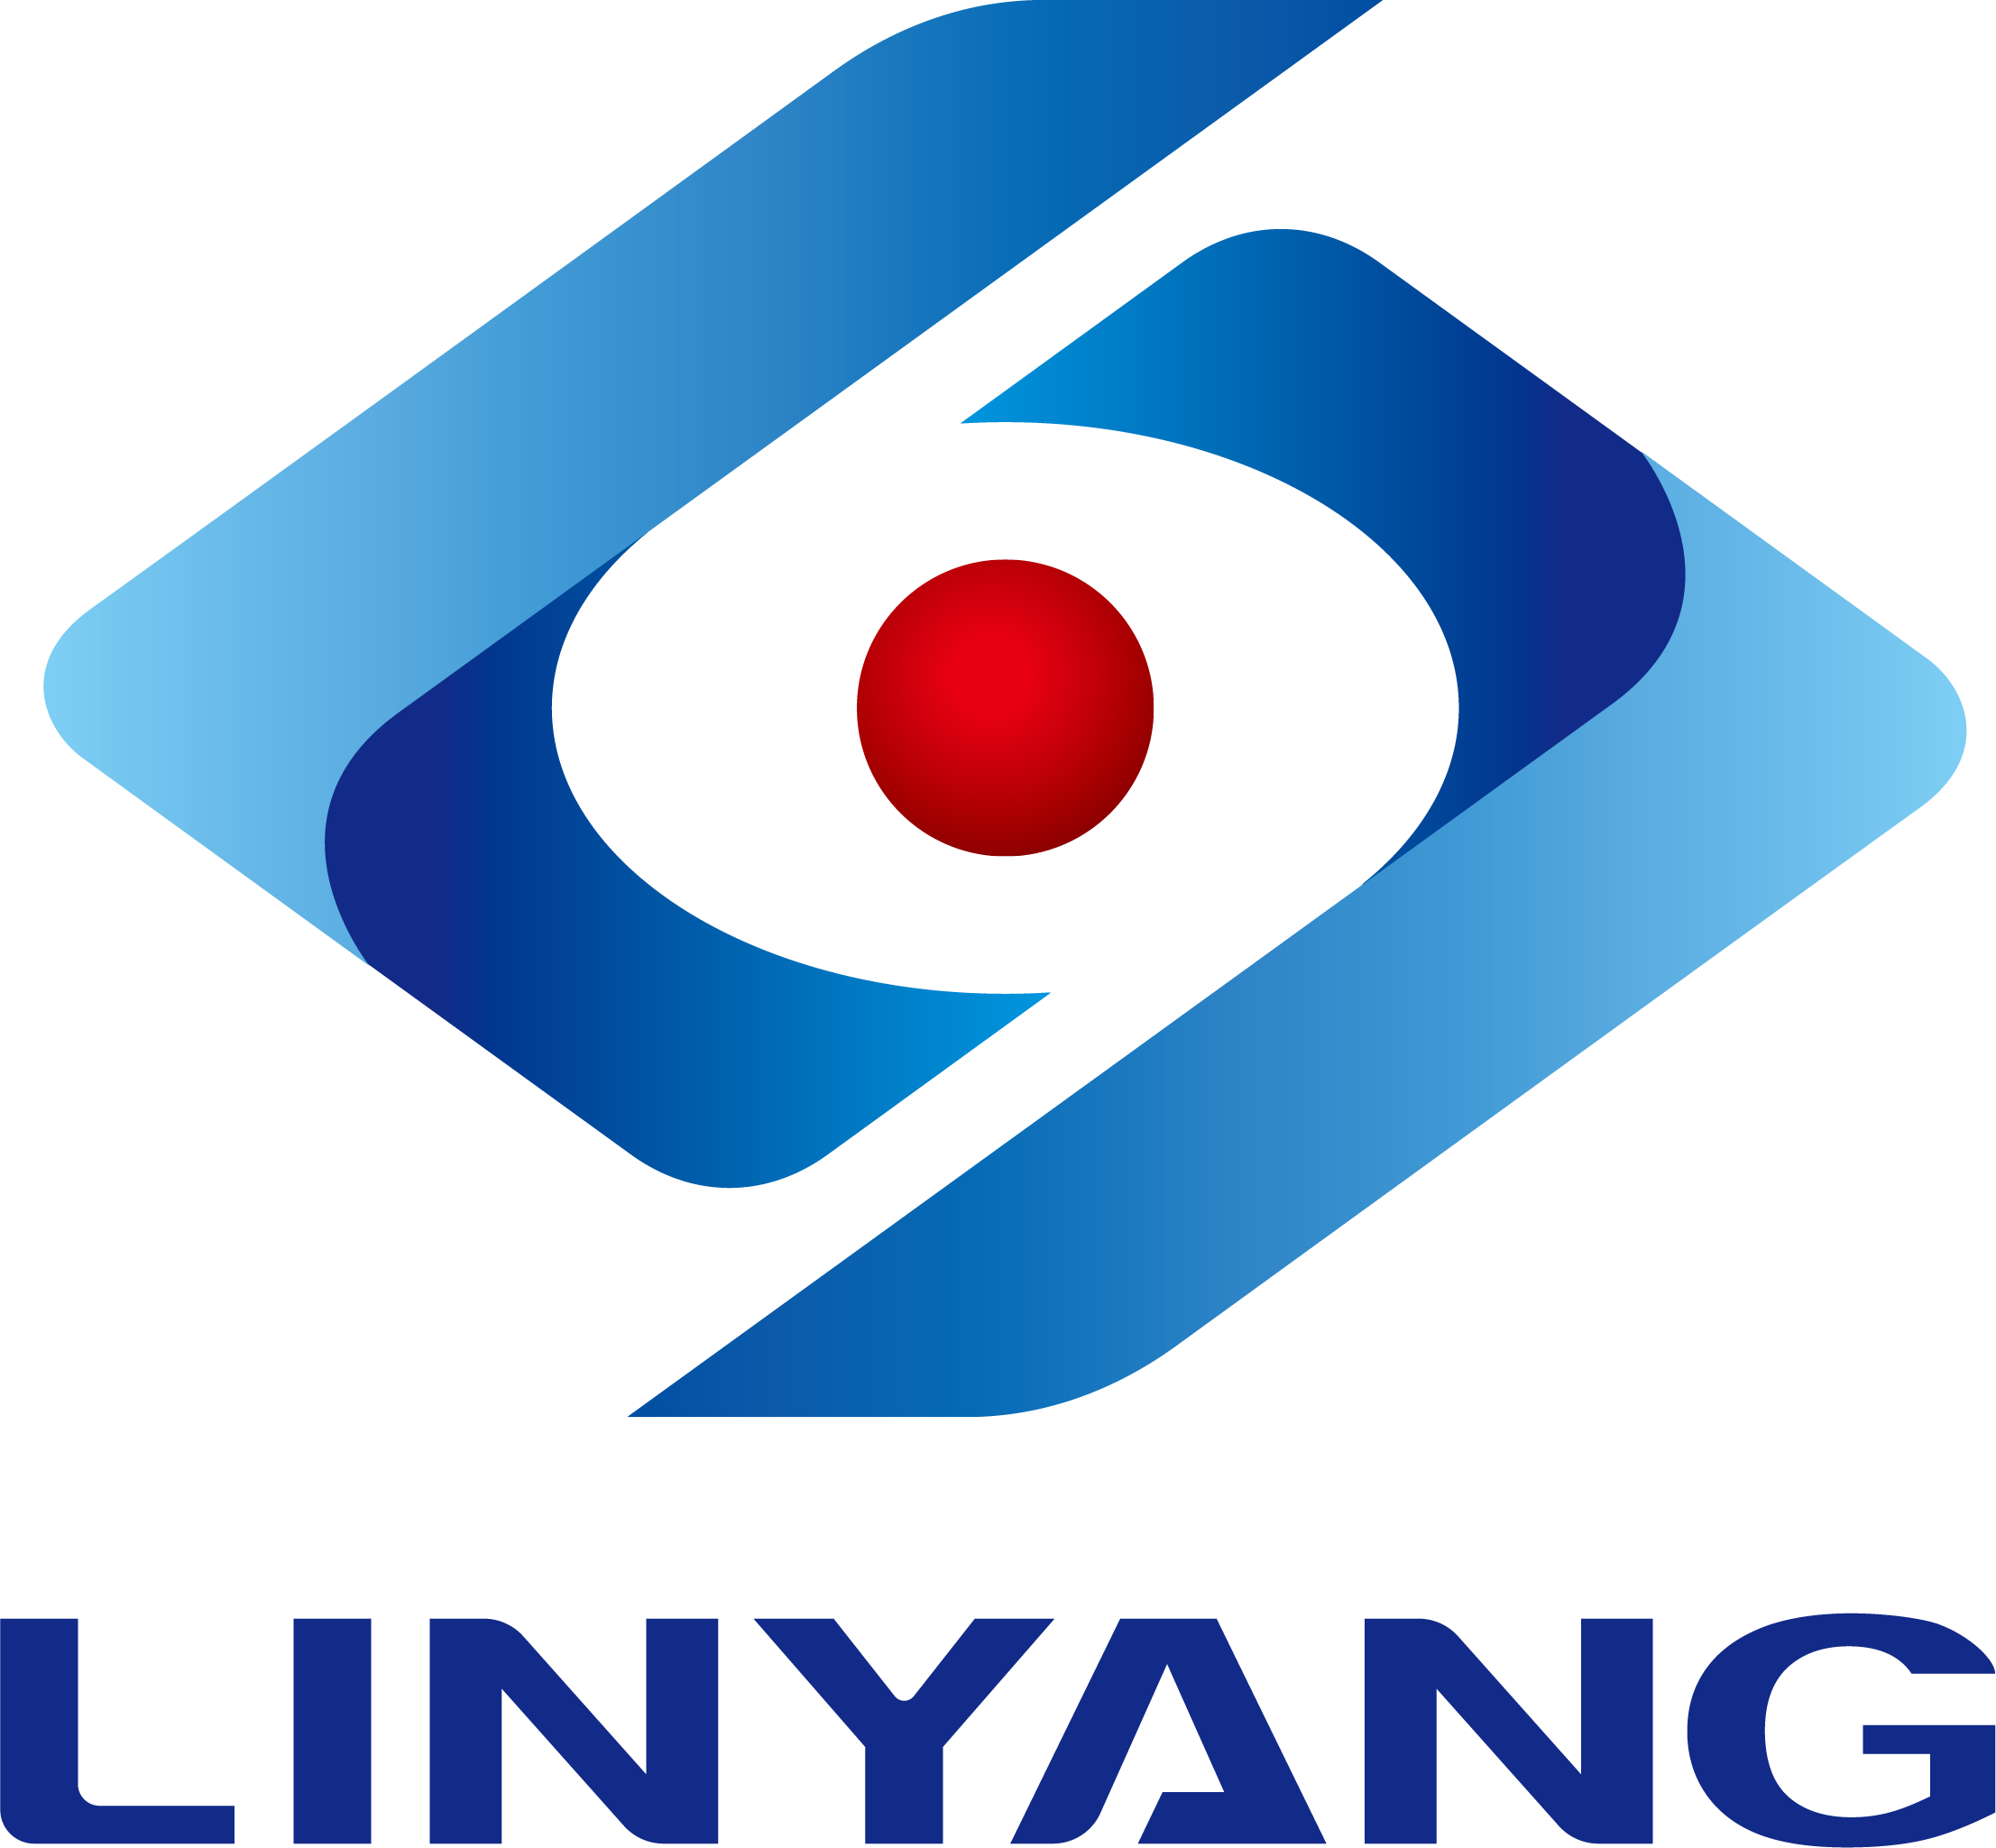 Shínigh Linyang Energy Iomlán beagnach 1.25-billiún-yuan Tionscadail Méadar Cliste agus Tionscadail Fhótavoltach